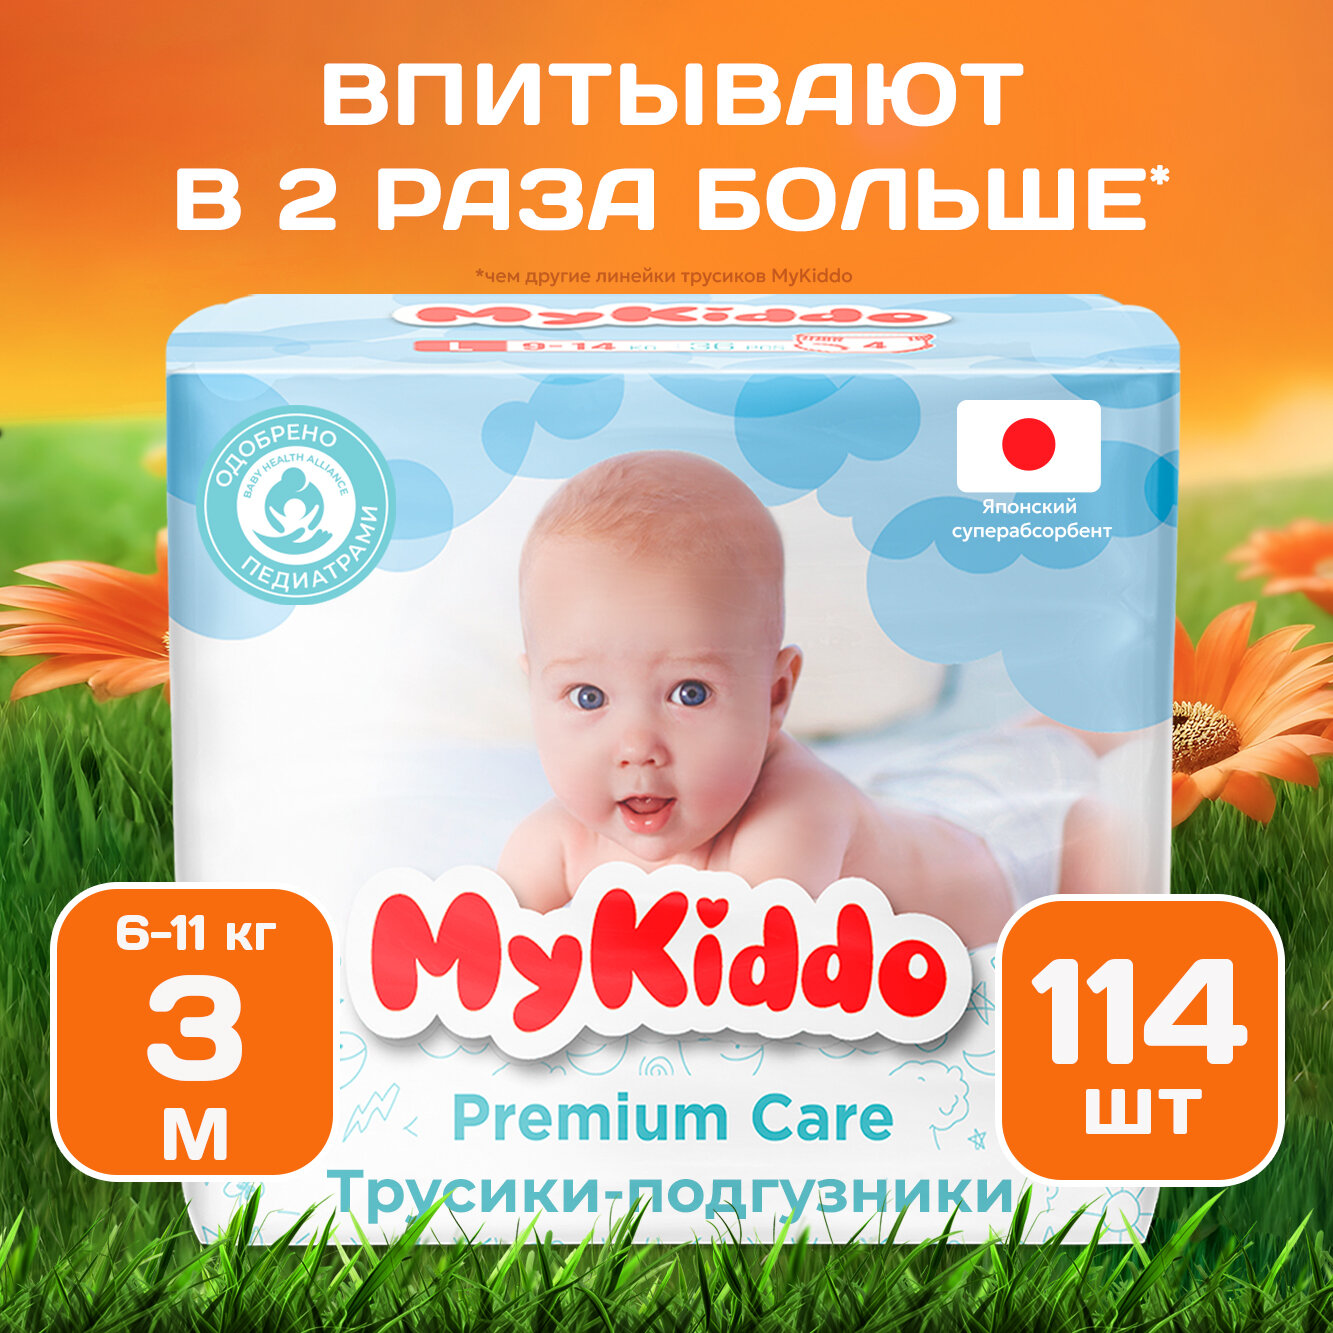 Подгузники трусики детские MyKiddo Premium размер 3 M, для детей весом 6-11 кг, 114 шт. (3 упаковки по 38 шт.) мегабокс